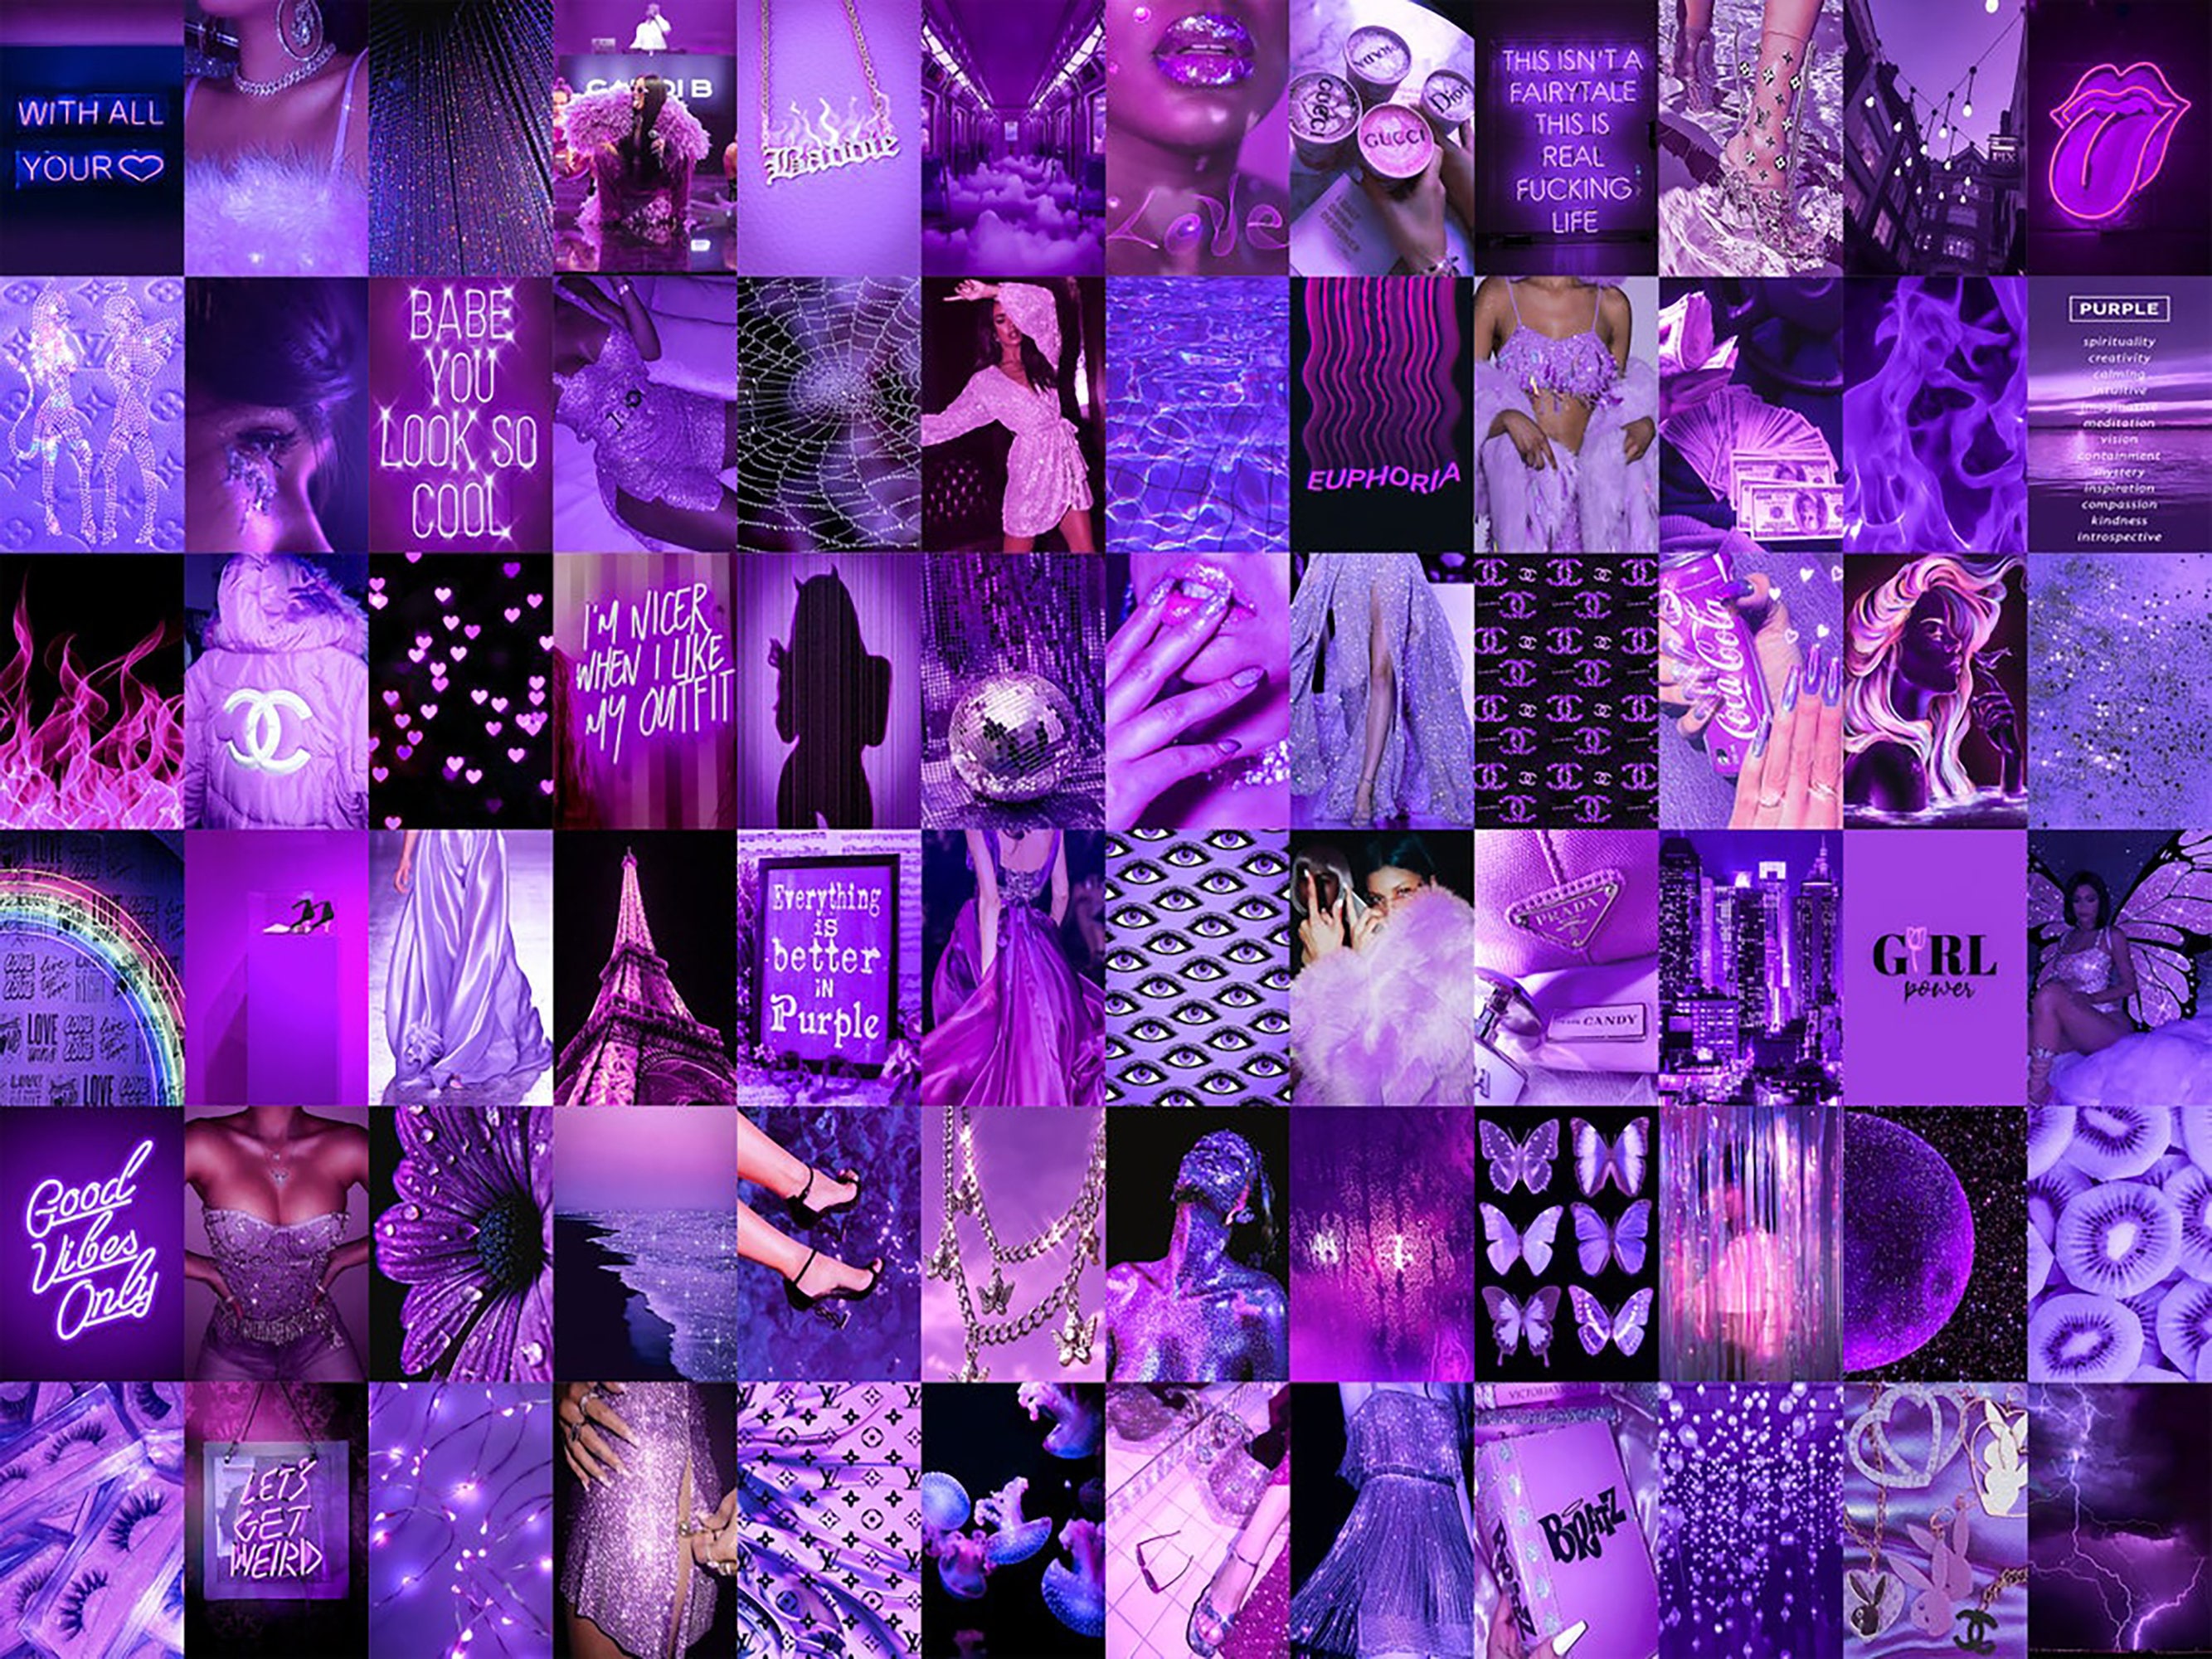 25 Purple Baddie Wallpapers Updated  Bridal Shower 101